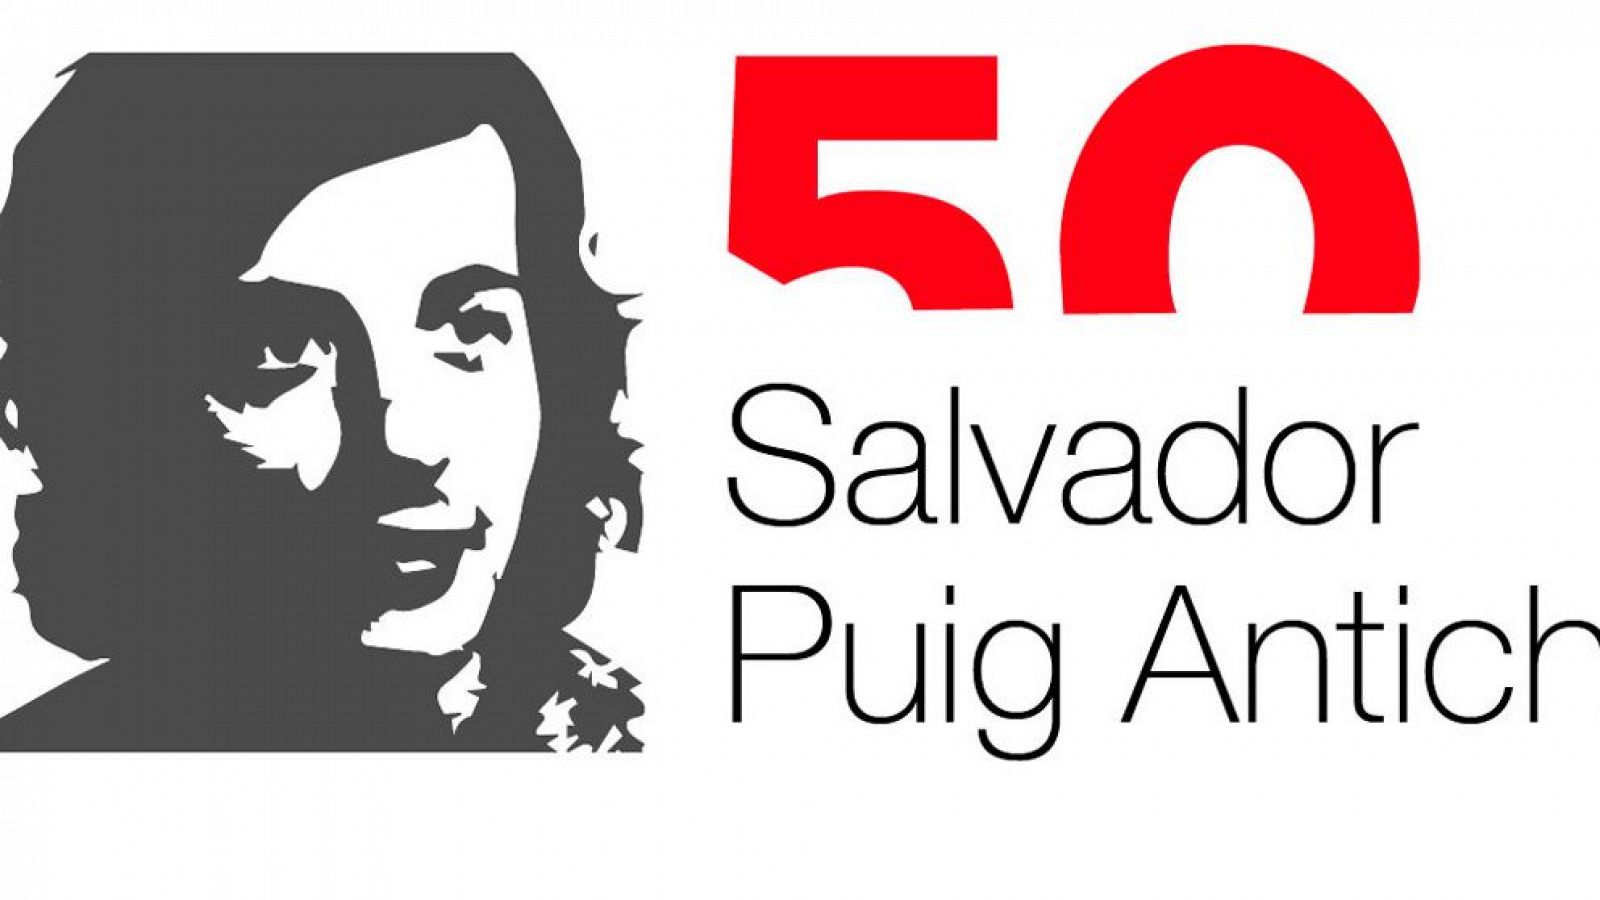 El Memorial Democràtic de la Generalitat de Catalunya recorda Salvador Puig Antich als 50 anys del seu assassinat